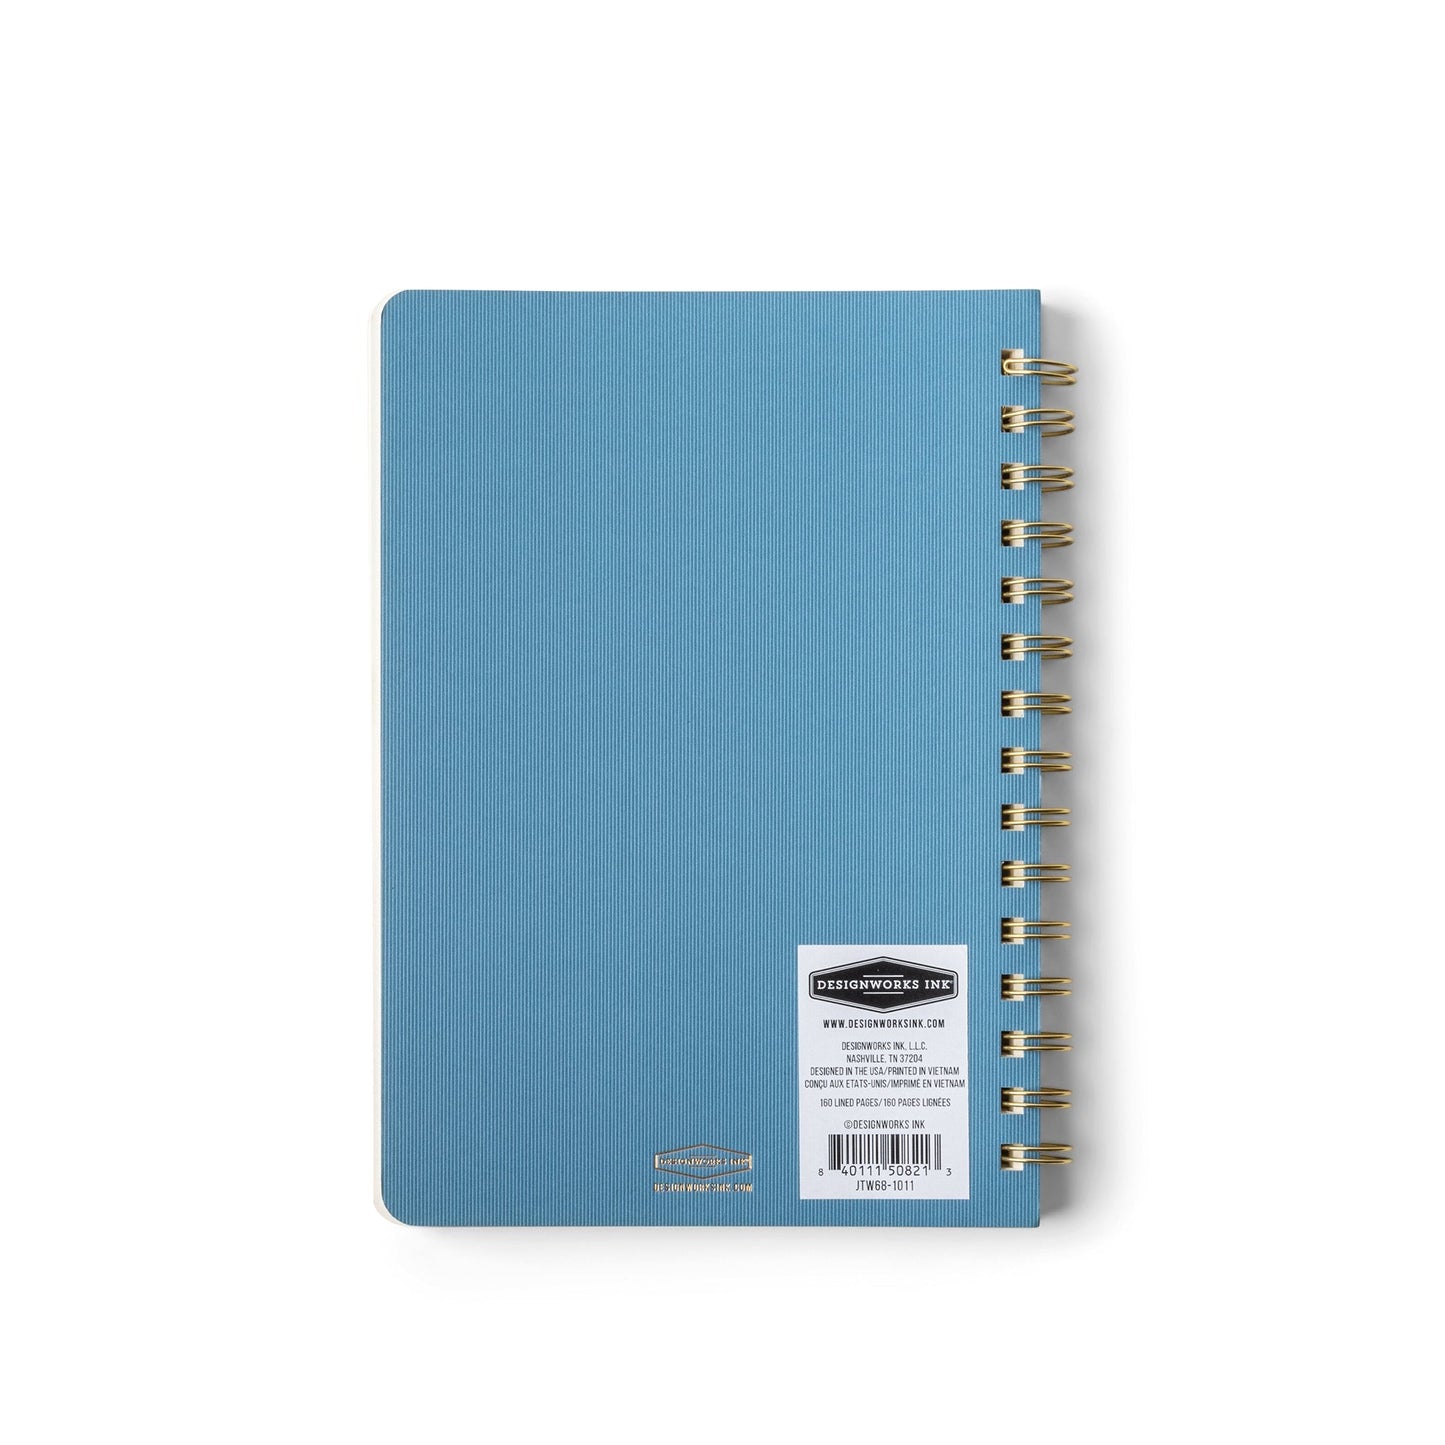 Crest A5 Notebook - Blue